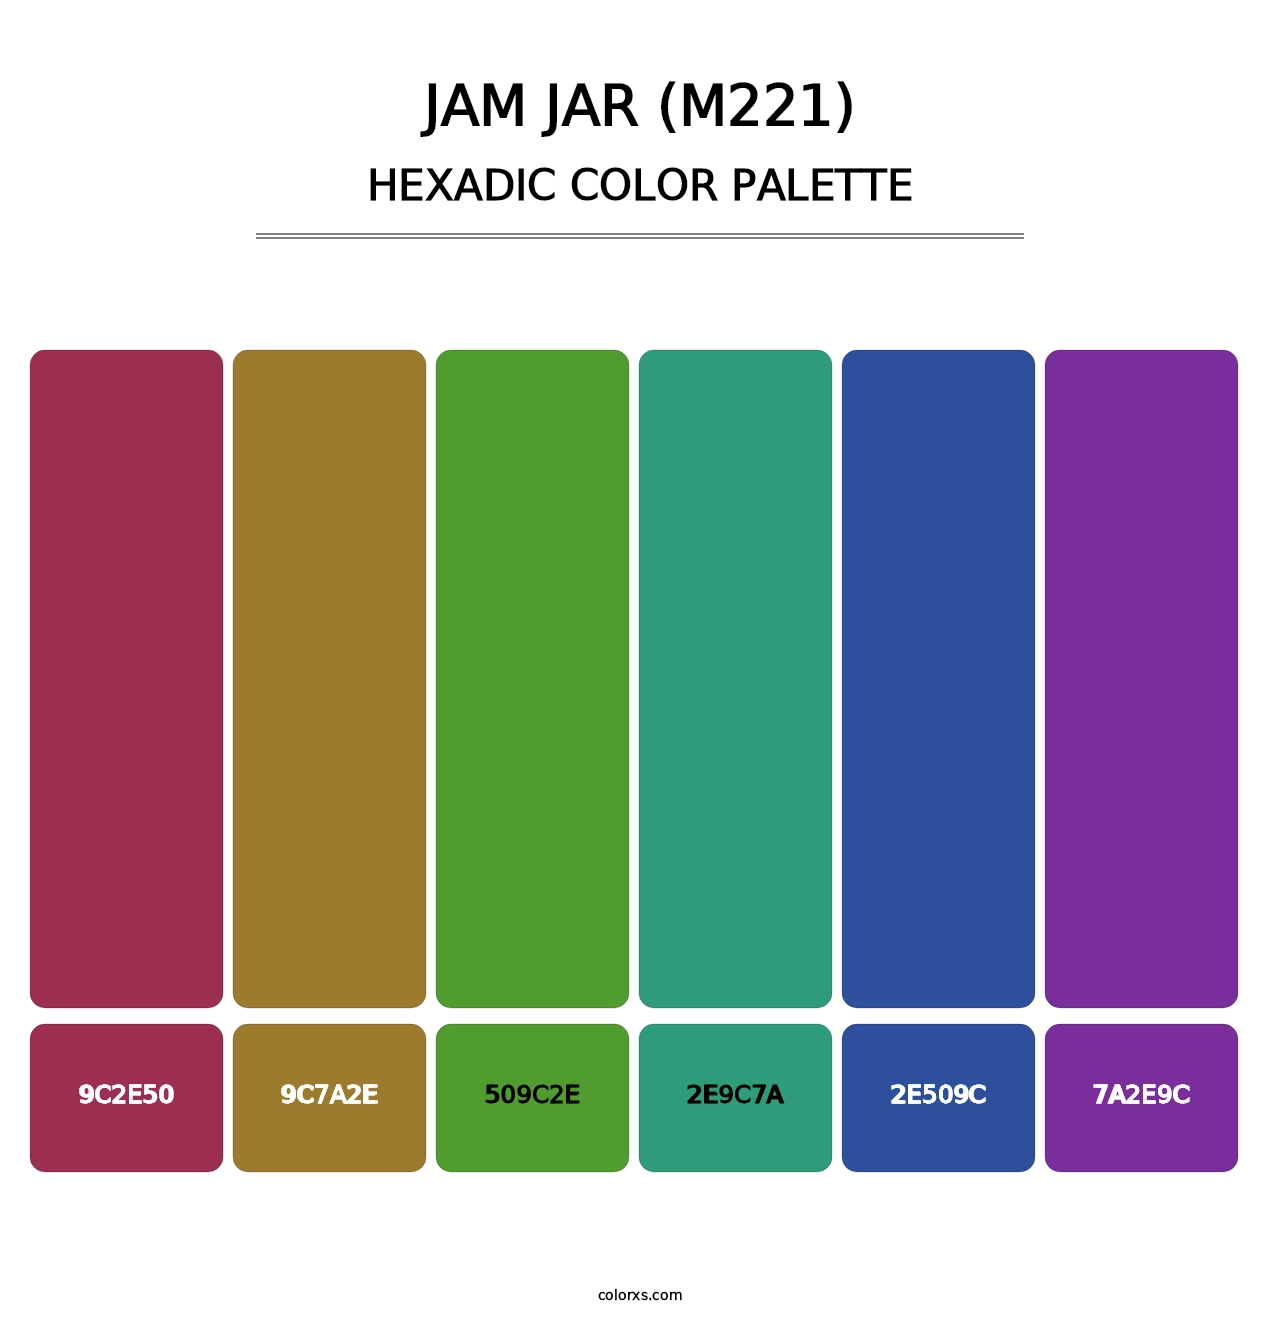 Jam Jar (M221) - Hexadic Color Palette